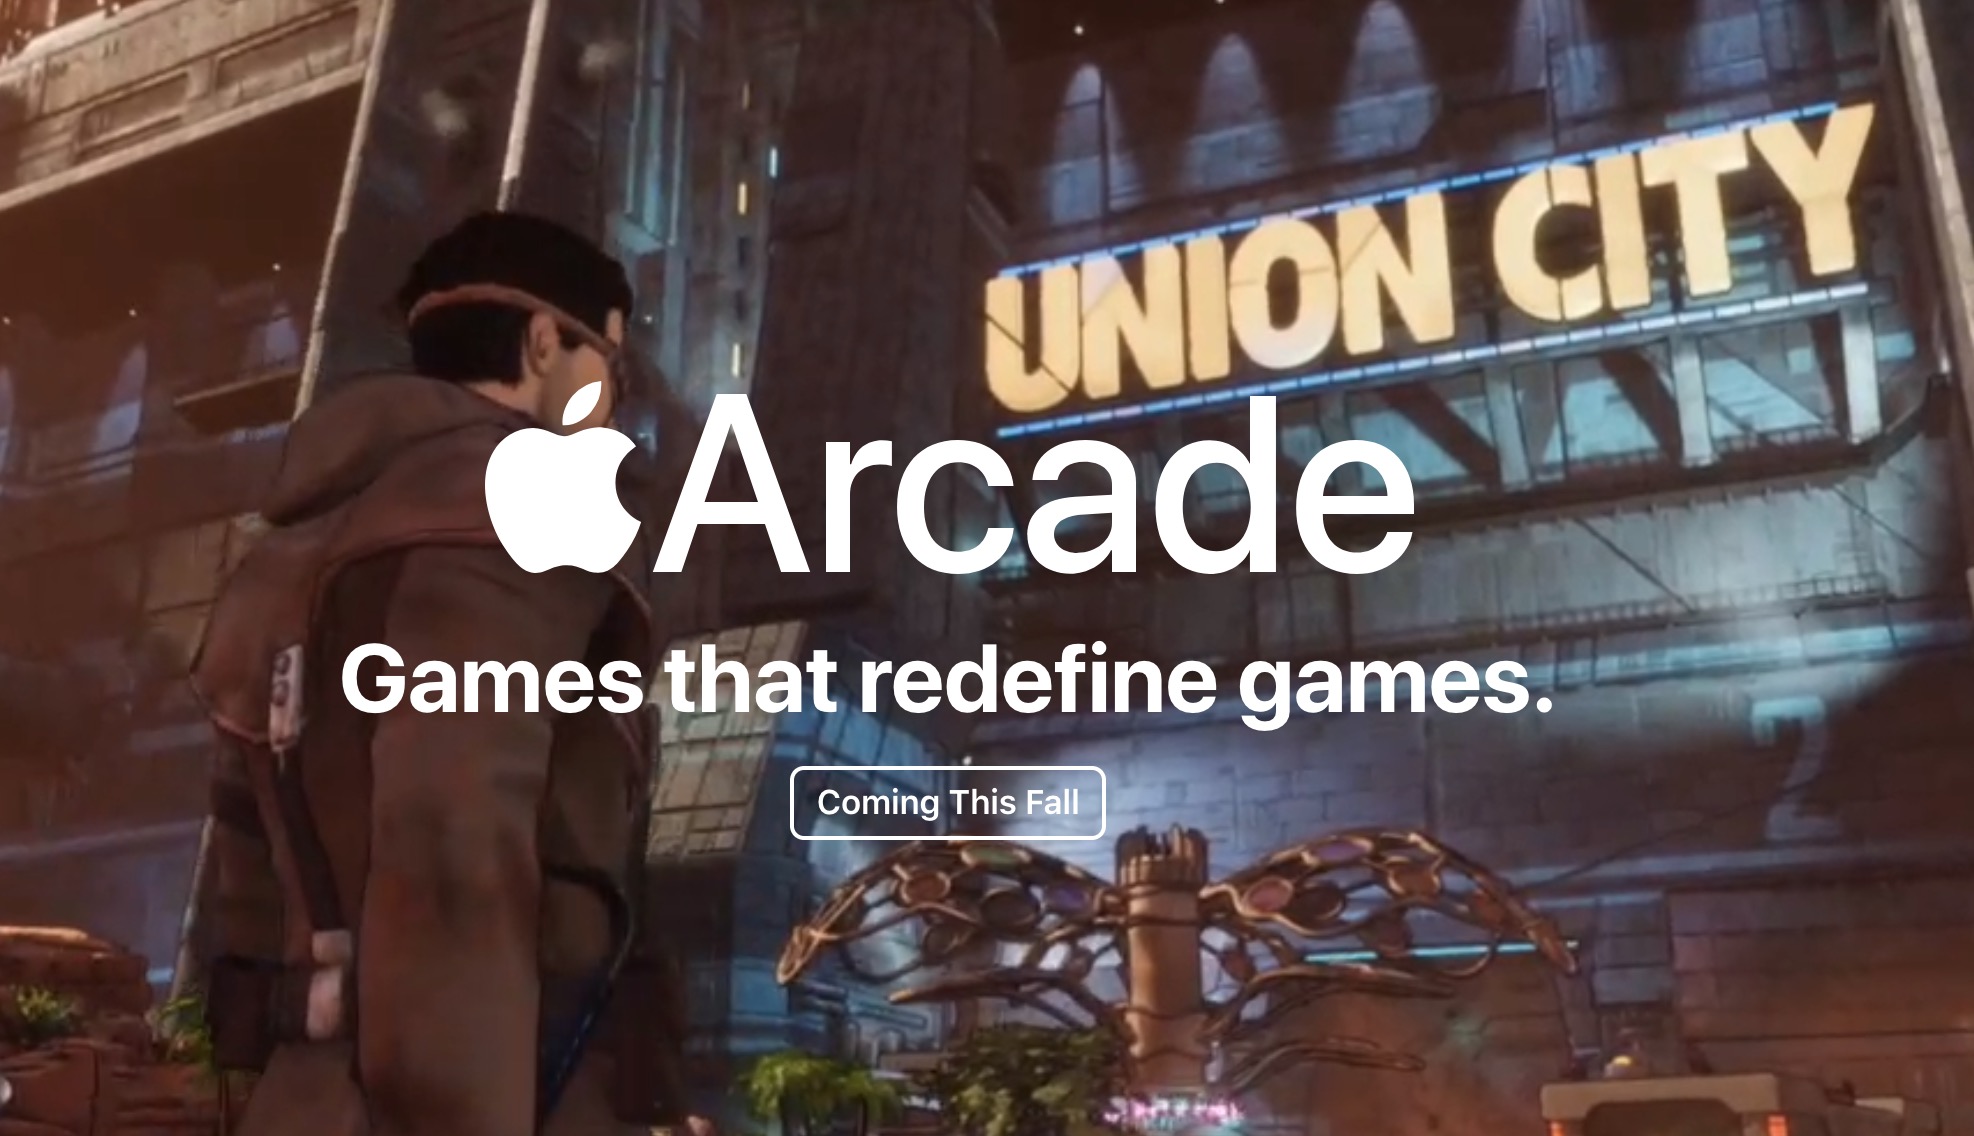 Tutto su Apple Arcade: giochi, prezzi, compatibilità del servizio videoludico in abbonamento